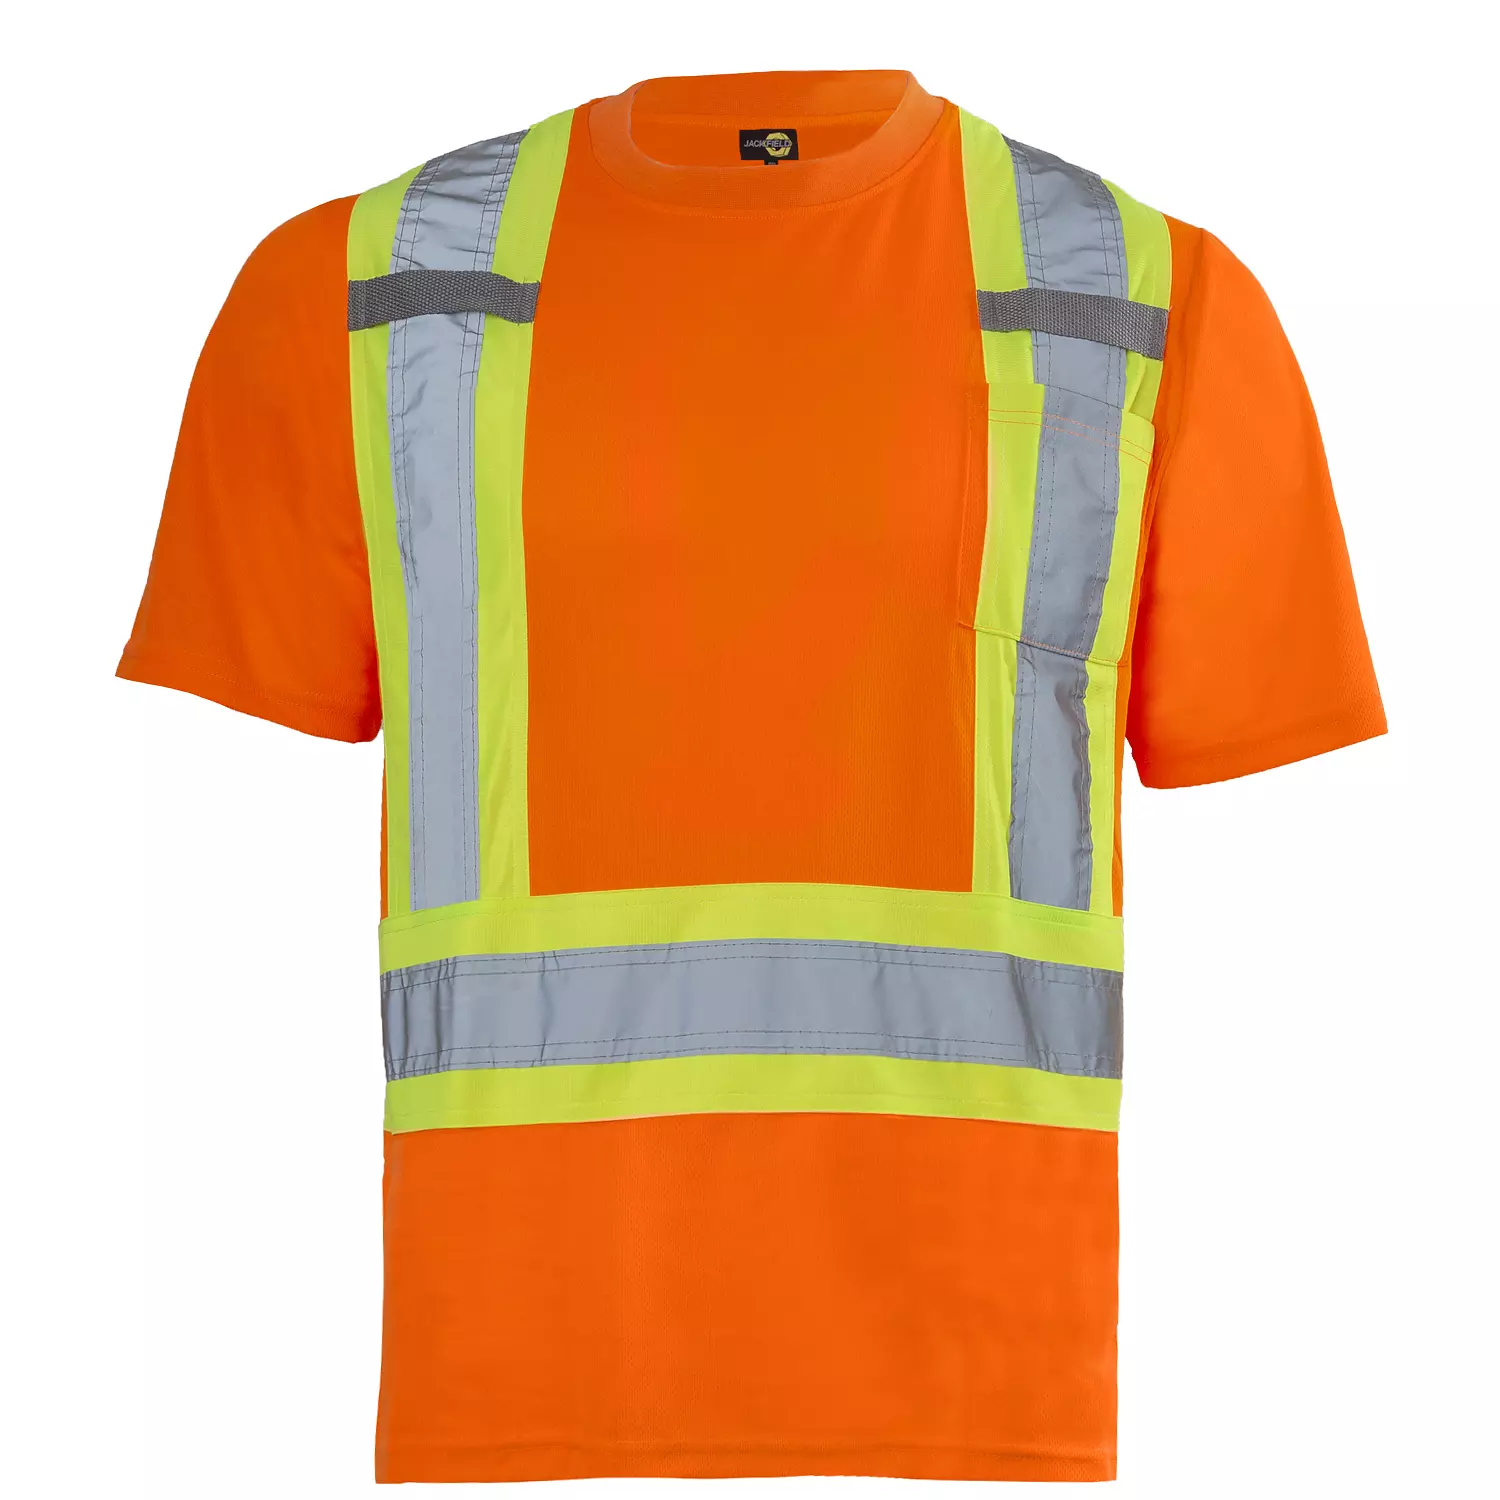 Jackfield - T-shirt manches courtes, haute visibilité, orange, grand (G)